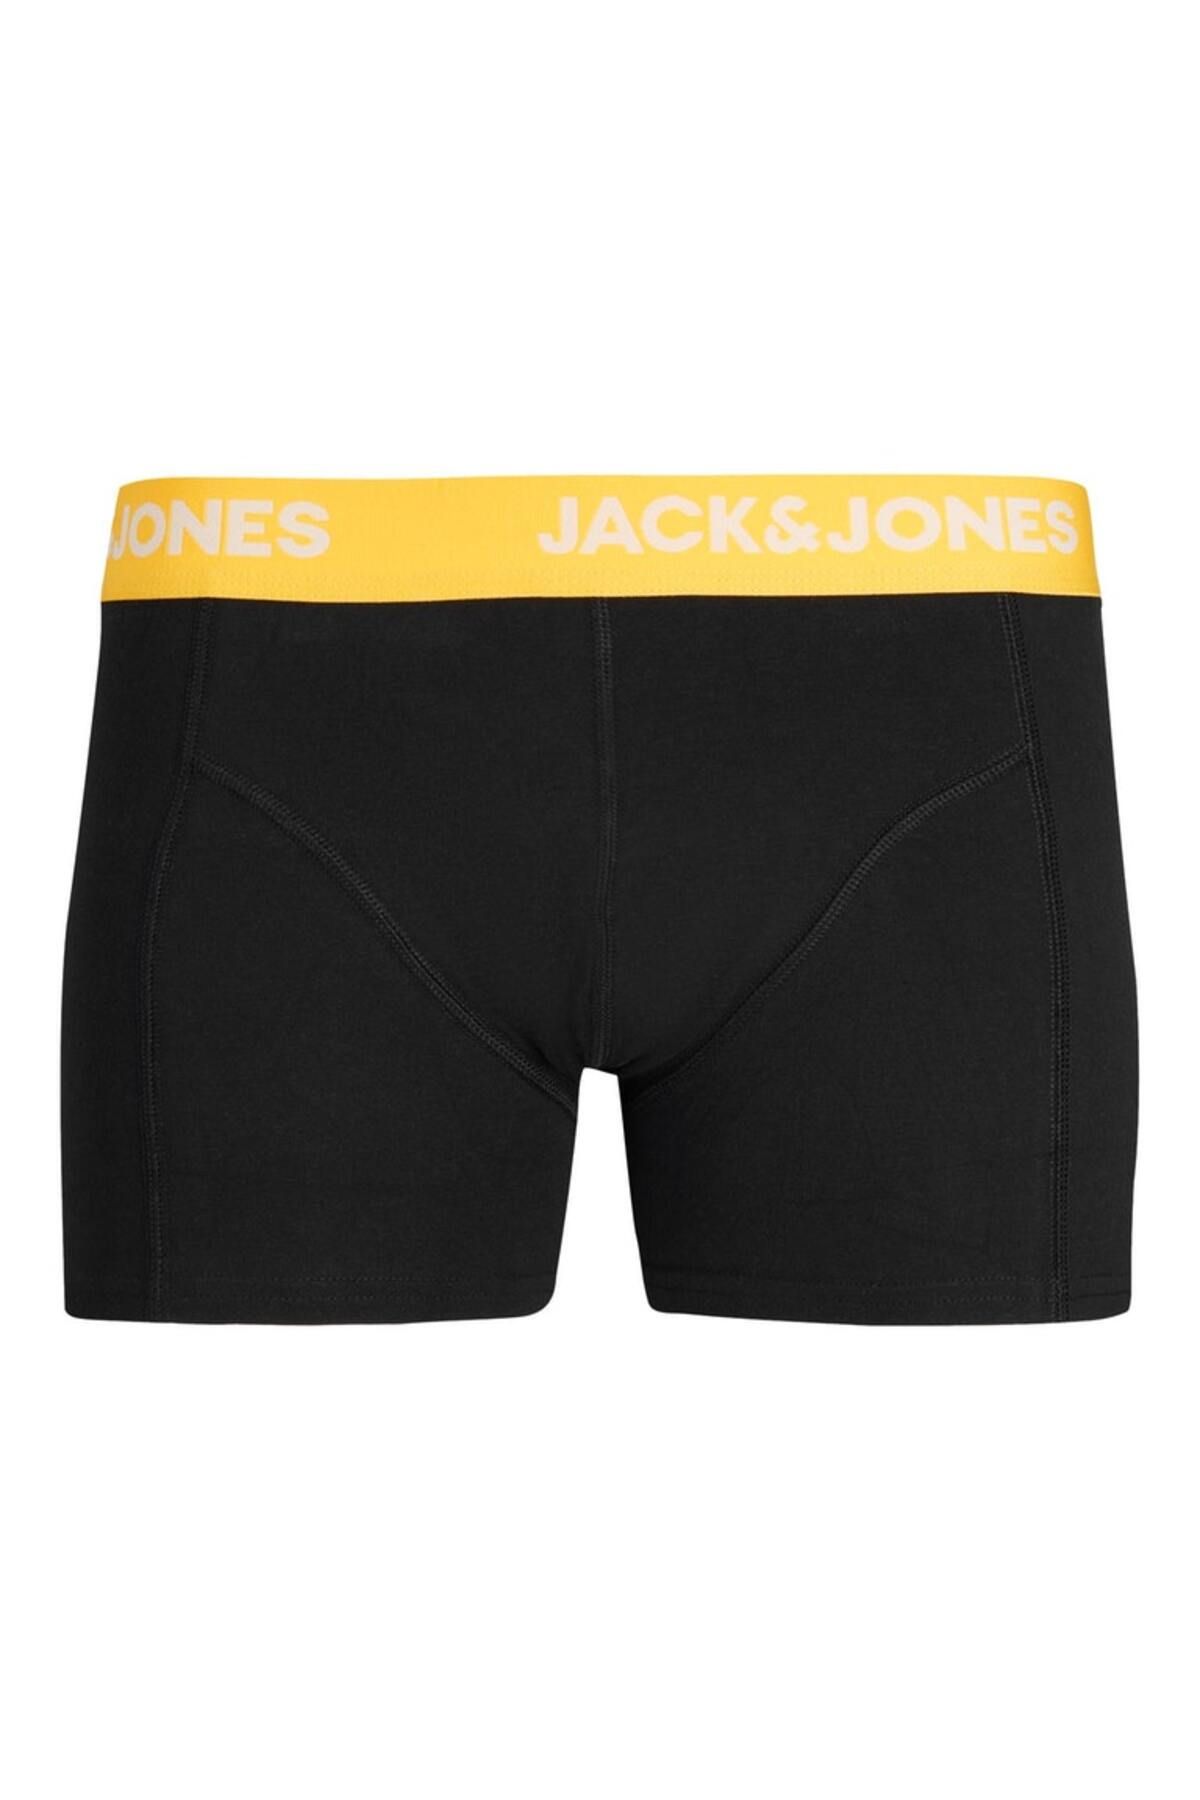 Jack & Jones Jack&jones Siyah-sarı Erkek Boxer 12237376